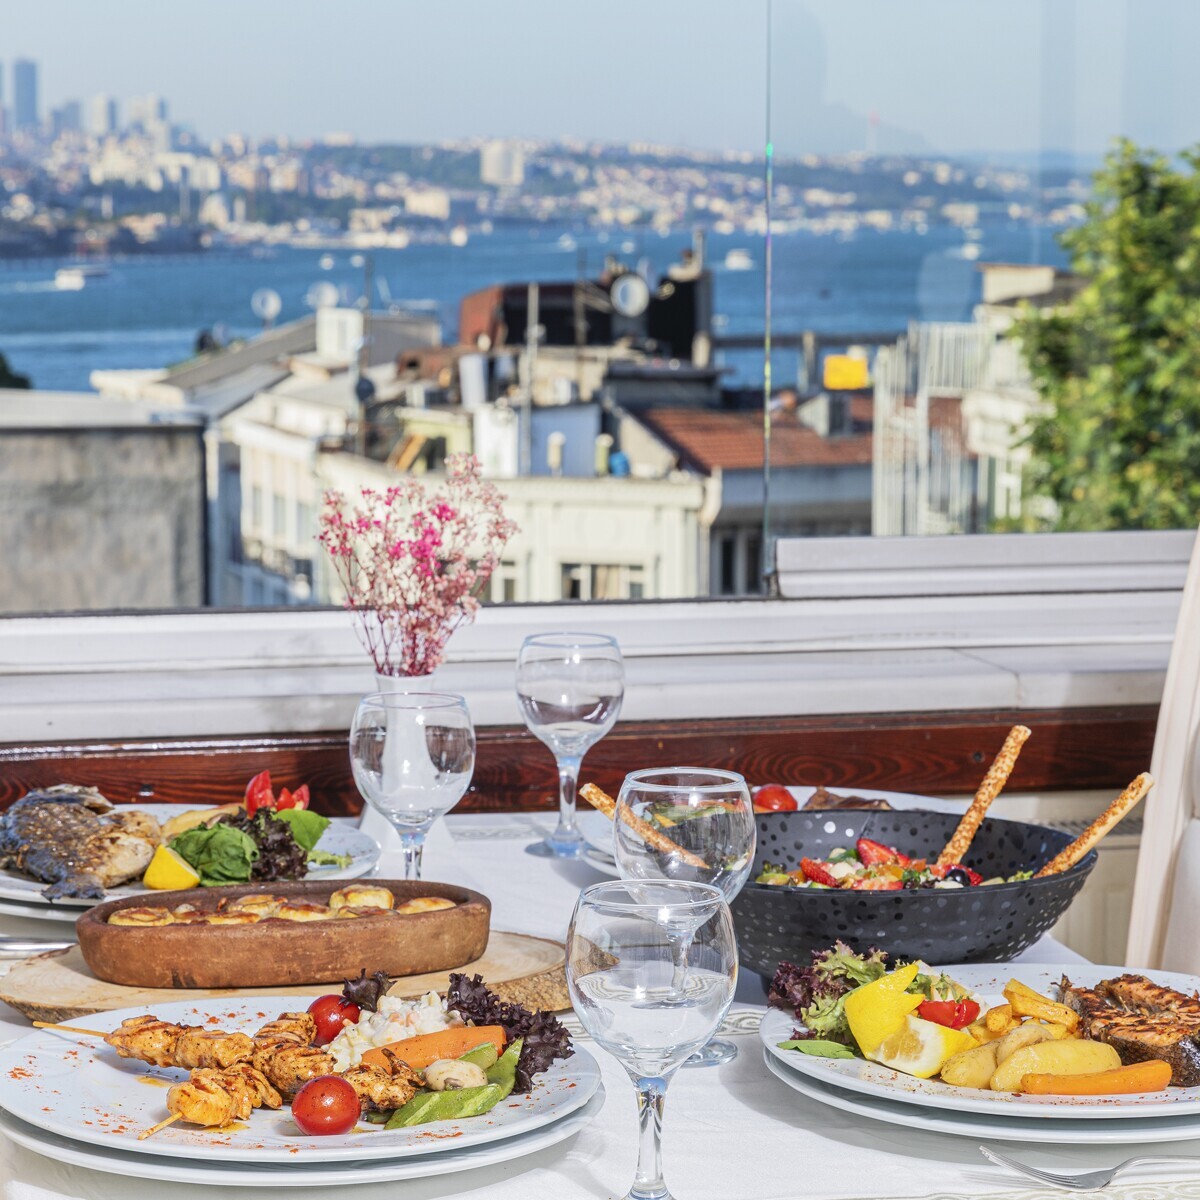 İpek Palas Hotel'de Deniz Manzaralı Enfes Yemek Menüleri